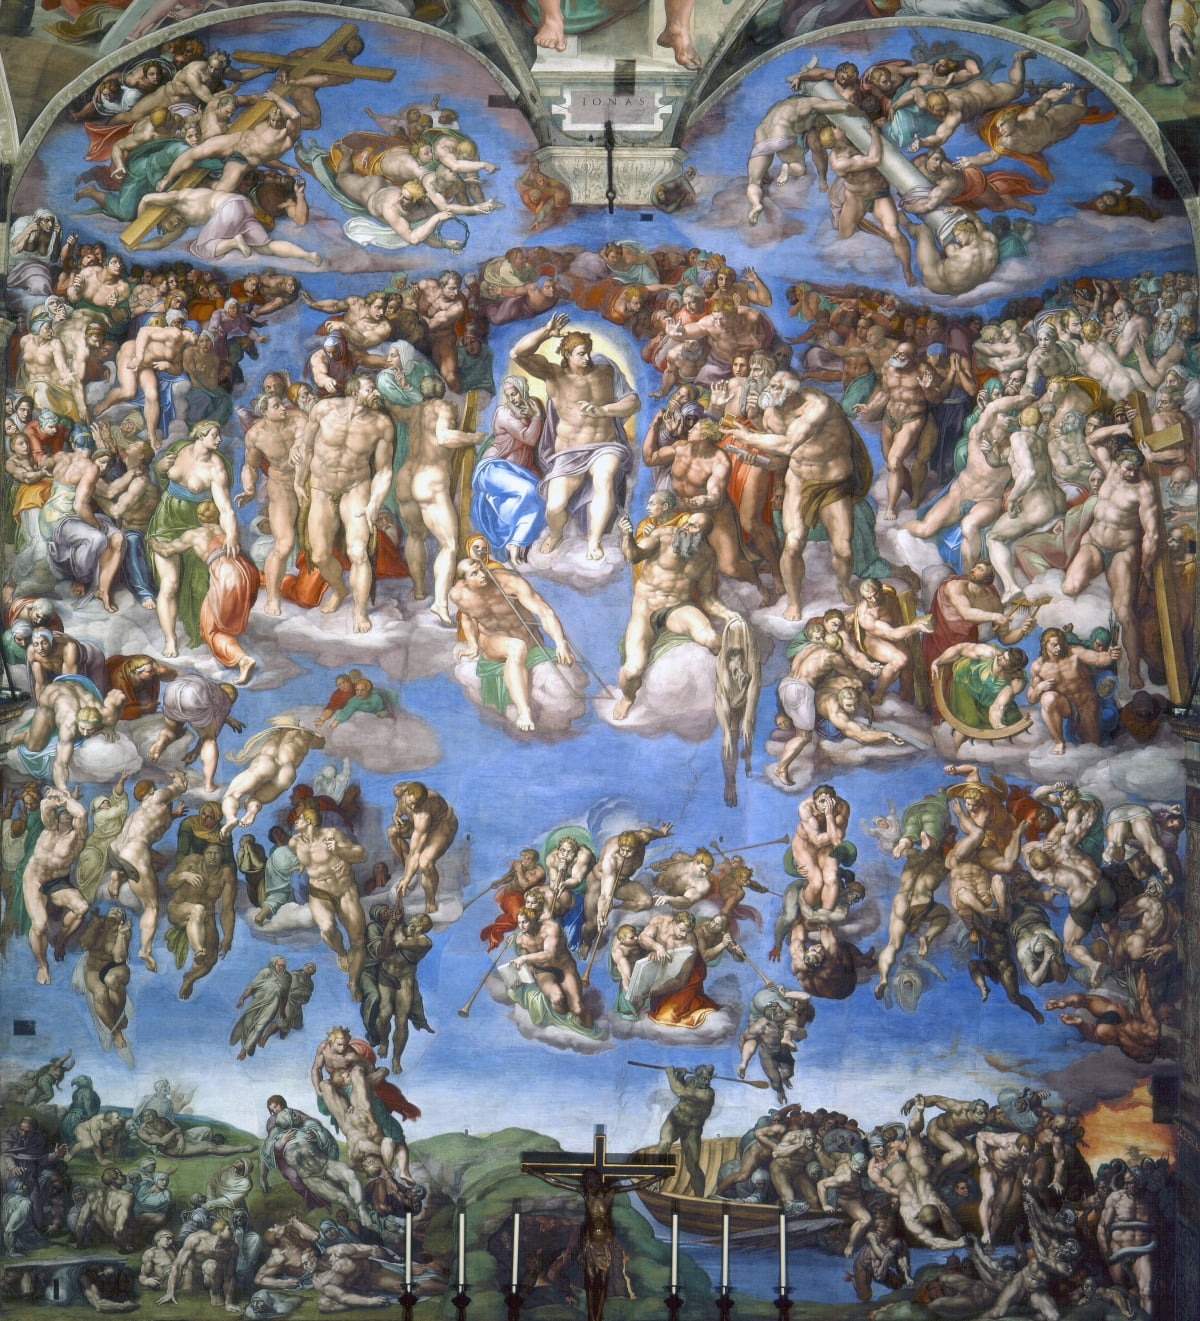 미켈란젤로의 대표작 중 하나인 '최후의 심판'(1536~1541). 미켈란젤로도 평생에 걸쳐 예술과 현실 사이에서 많은 괴로움을 겪었다. 그림 속 예수의 12제자 중 한 명인 바르톨로메오가 들고 있는 가죽은 자신의 고통받는 모습이다.